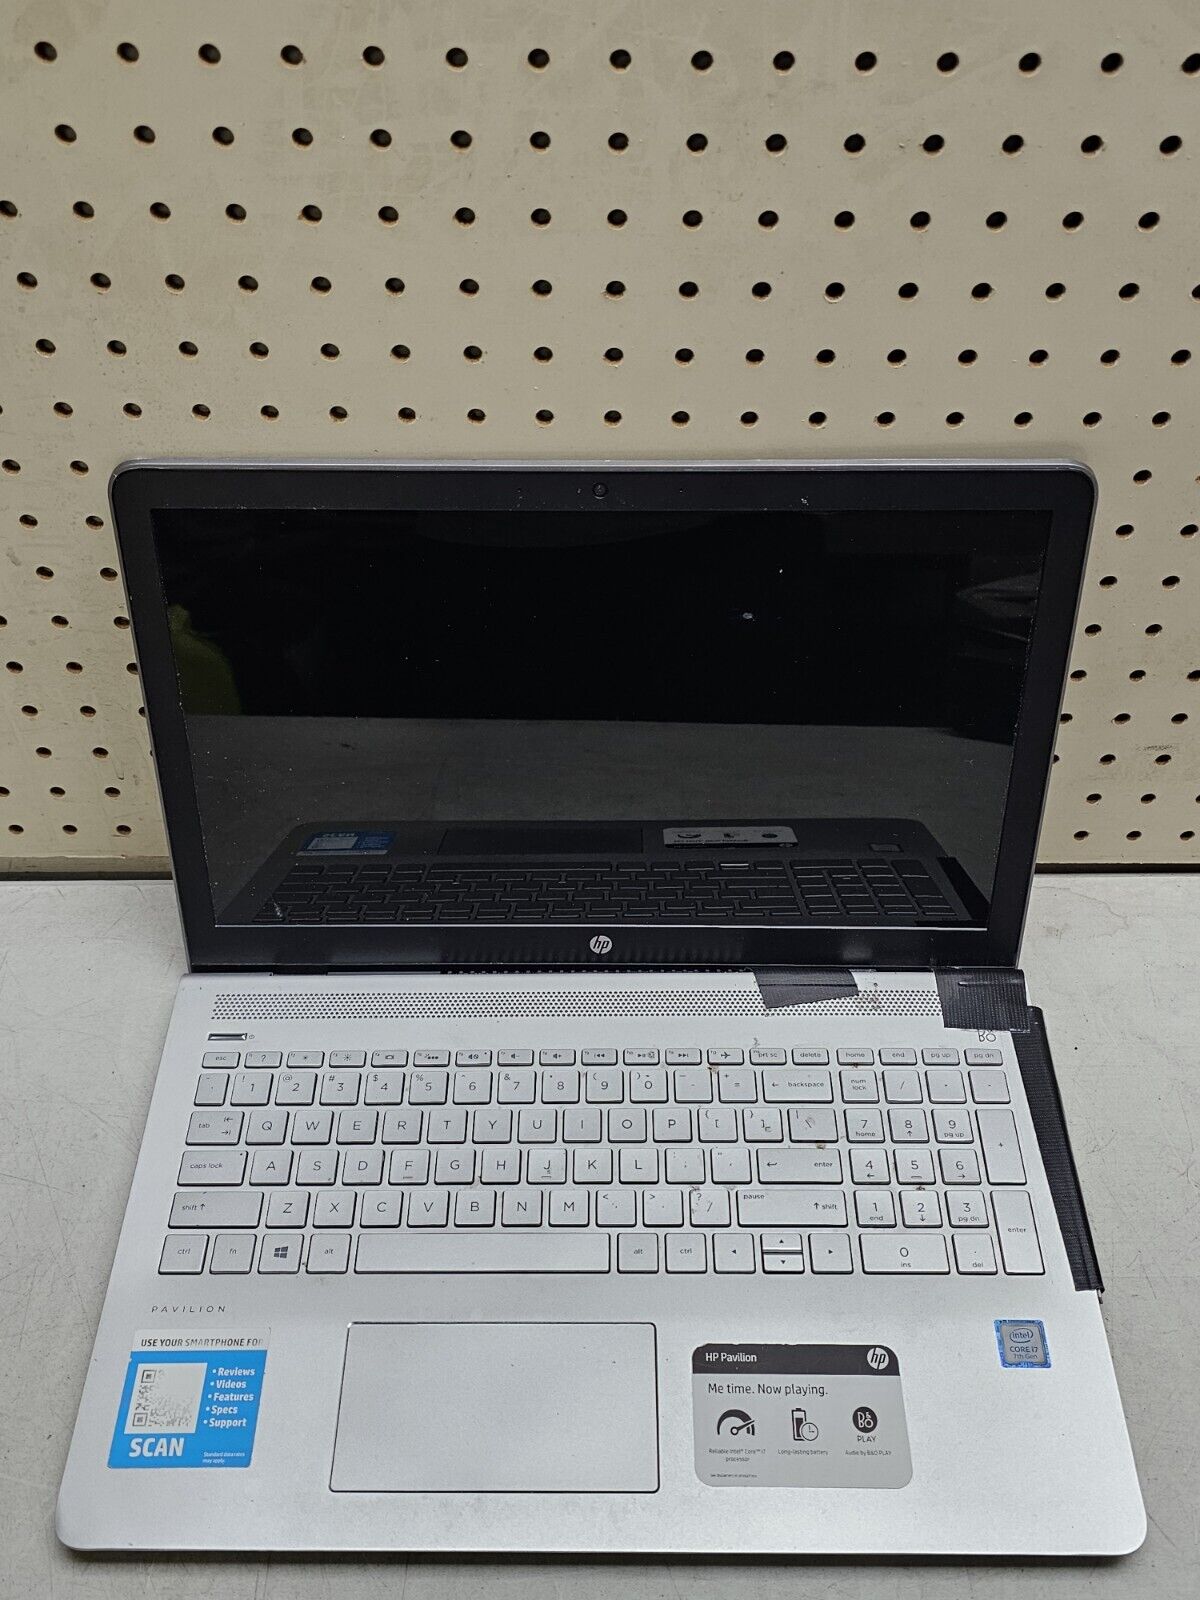 HP 3168NGW Laptop - i7 7th Generation - NO HDD/RAM/OS - SELL REPAIR/PARTS